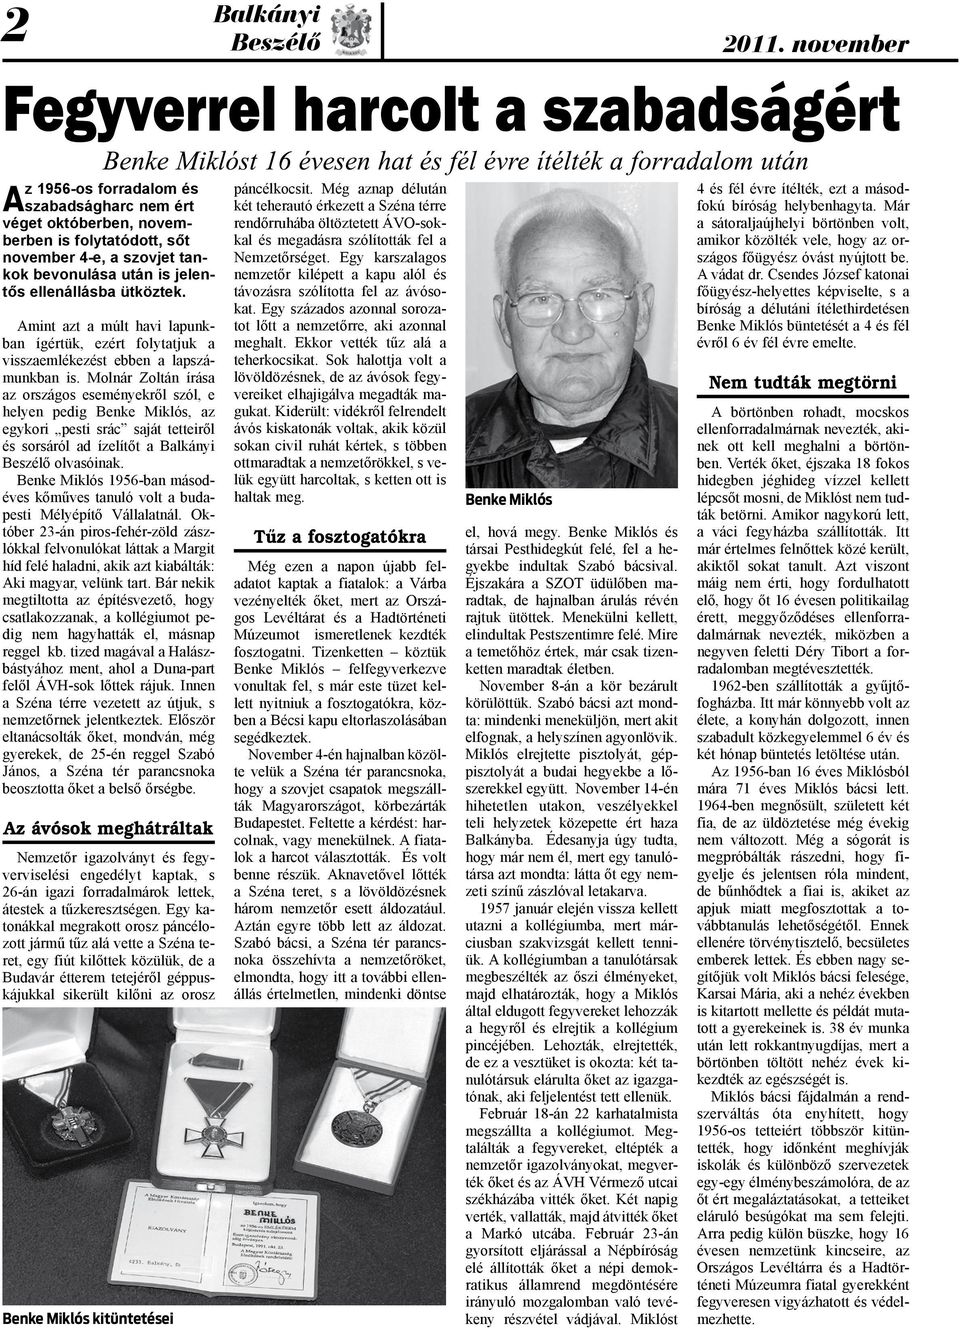 Molnár Zoltán írása az országos eseményekről szól, e helyen pedig Benke Miklós, az egykori pesti srác saját tetteiről és sorsáról ad ízelítőt a olvasóinak.